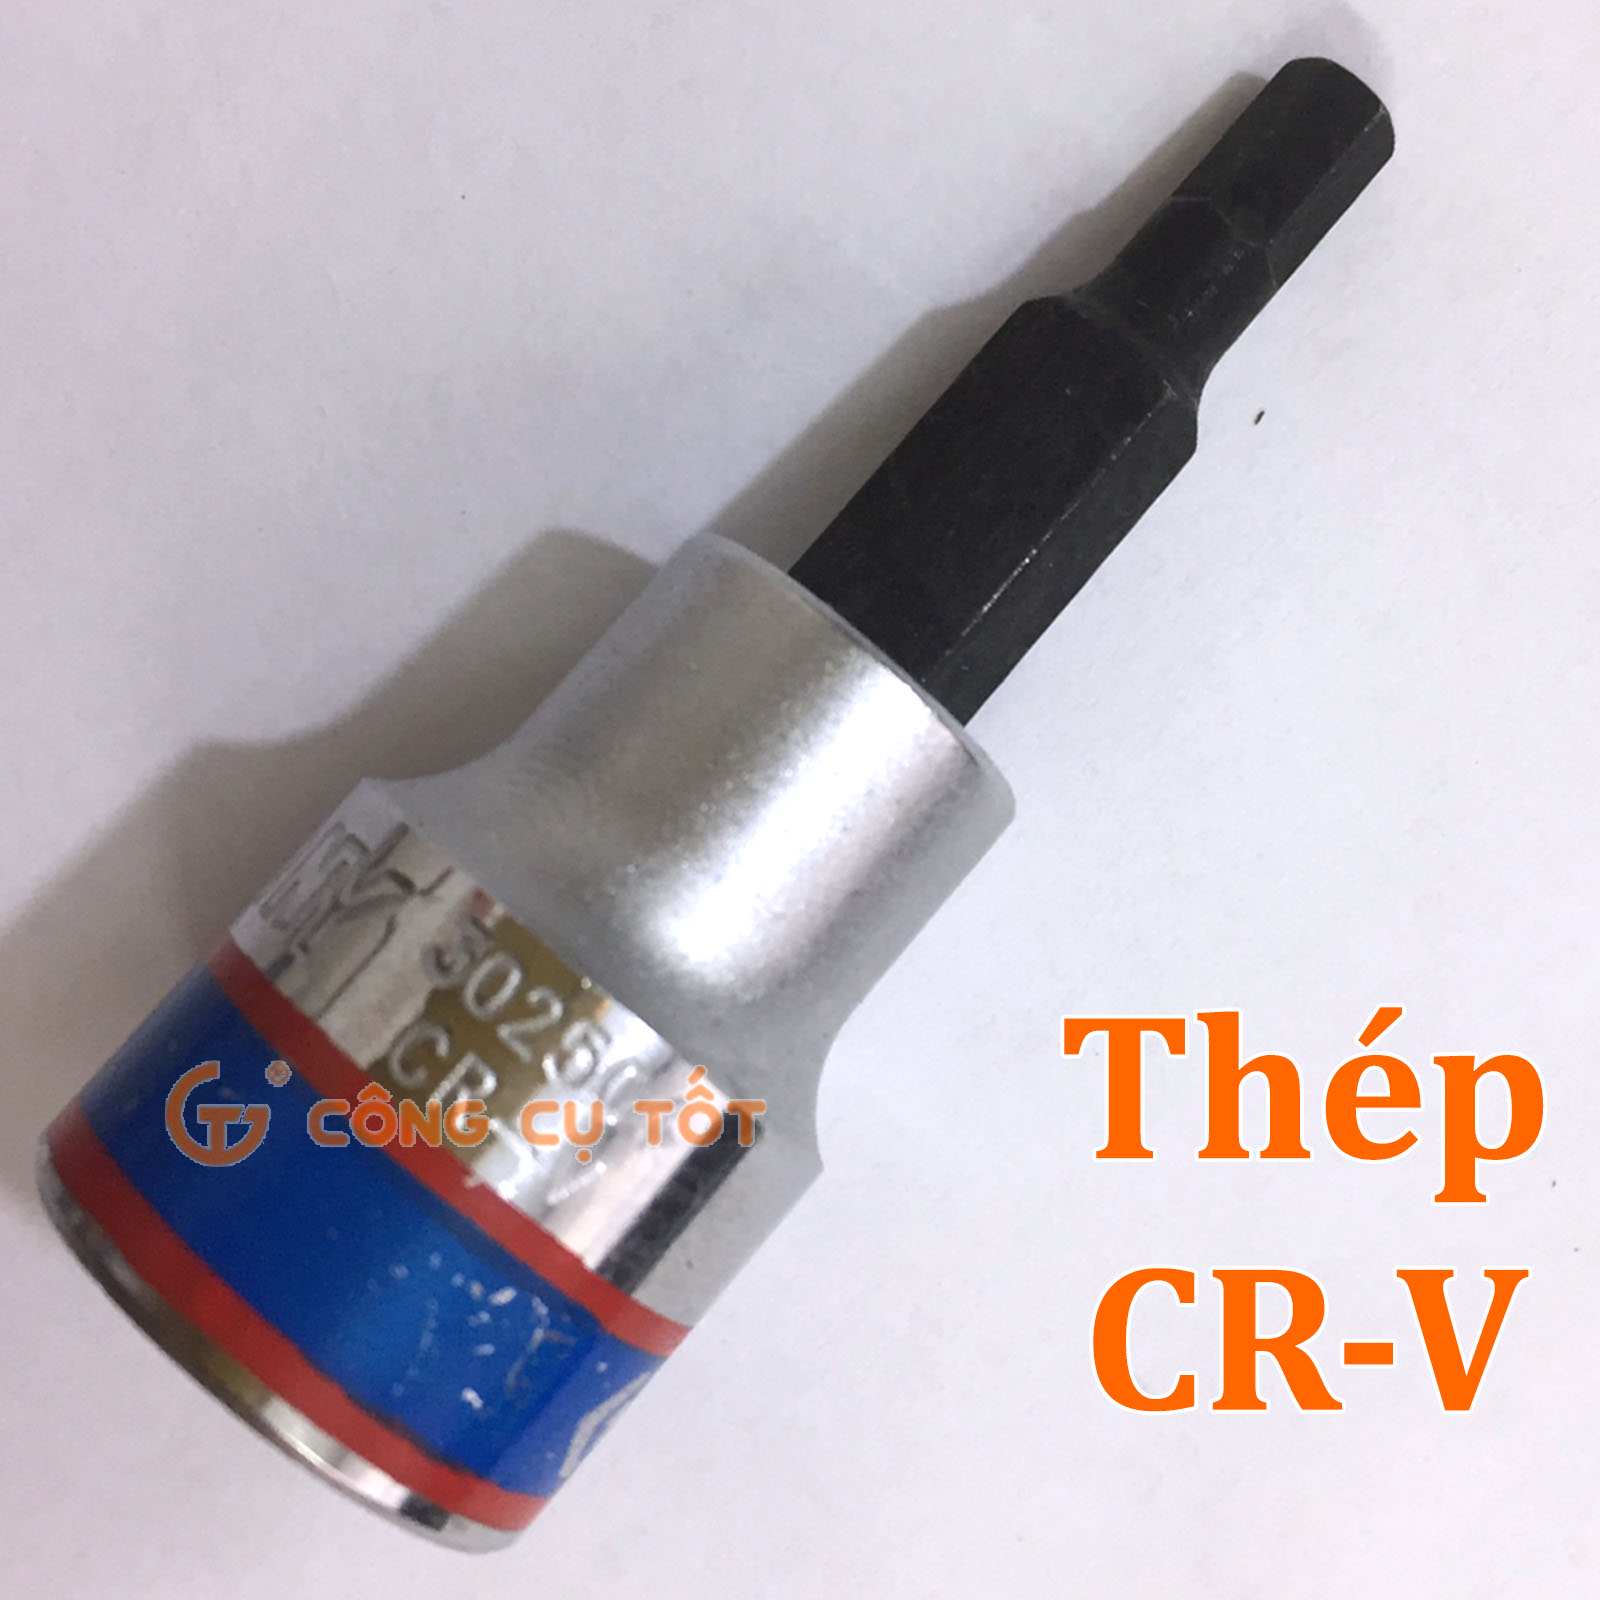 Được chế tạo từ chất liệu thép Cr-V (Chrome Vanadium)